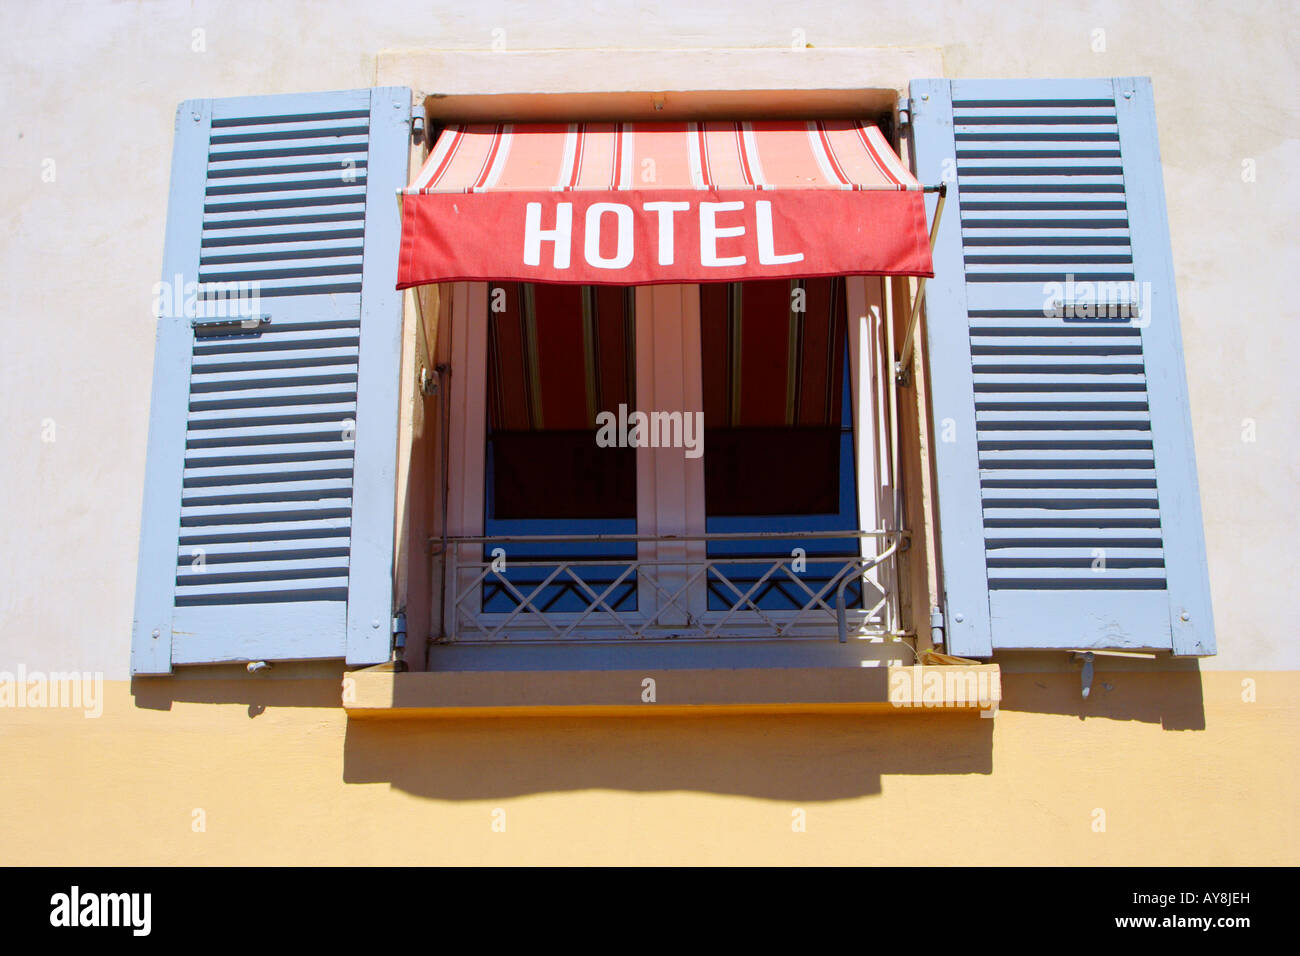 Ongebruikt french hotel window with shutters Stock Photo: 17028424 - Alamy HC-66